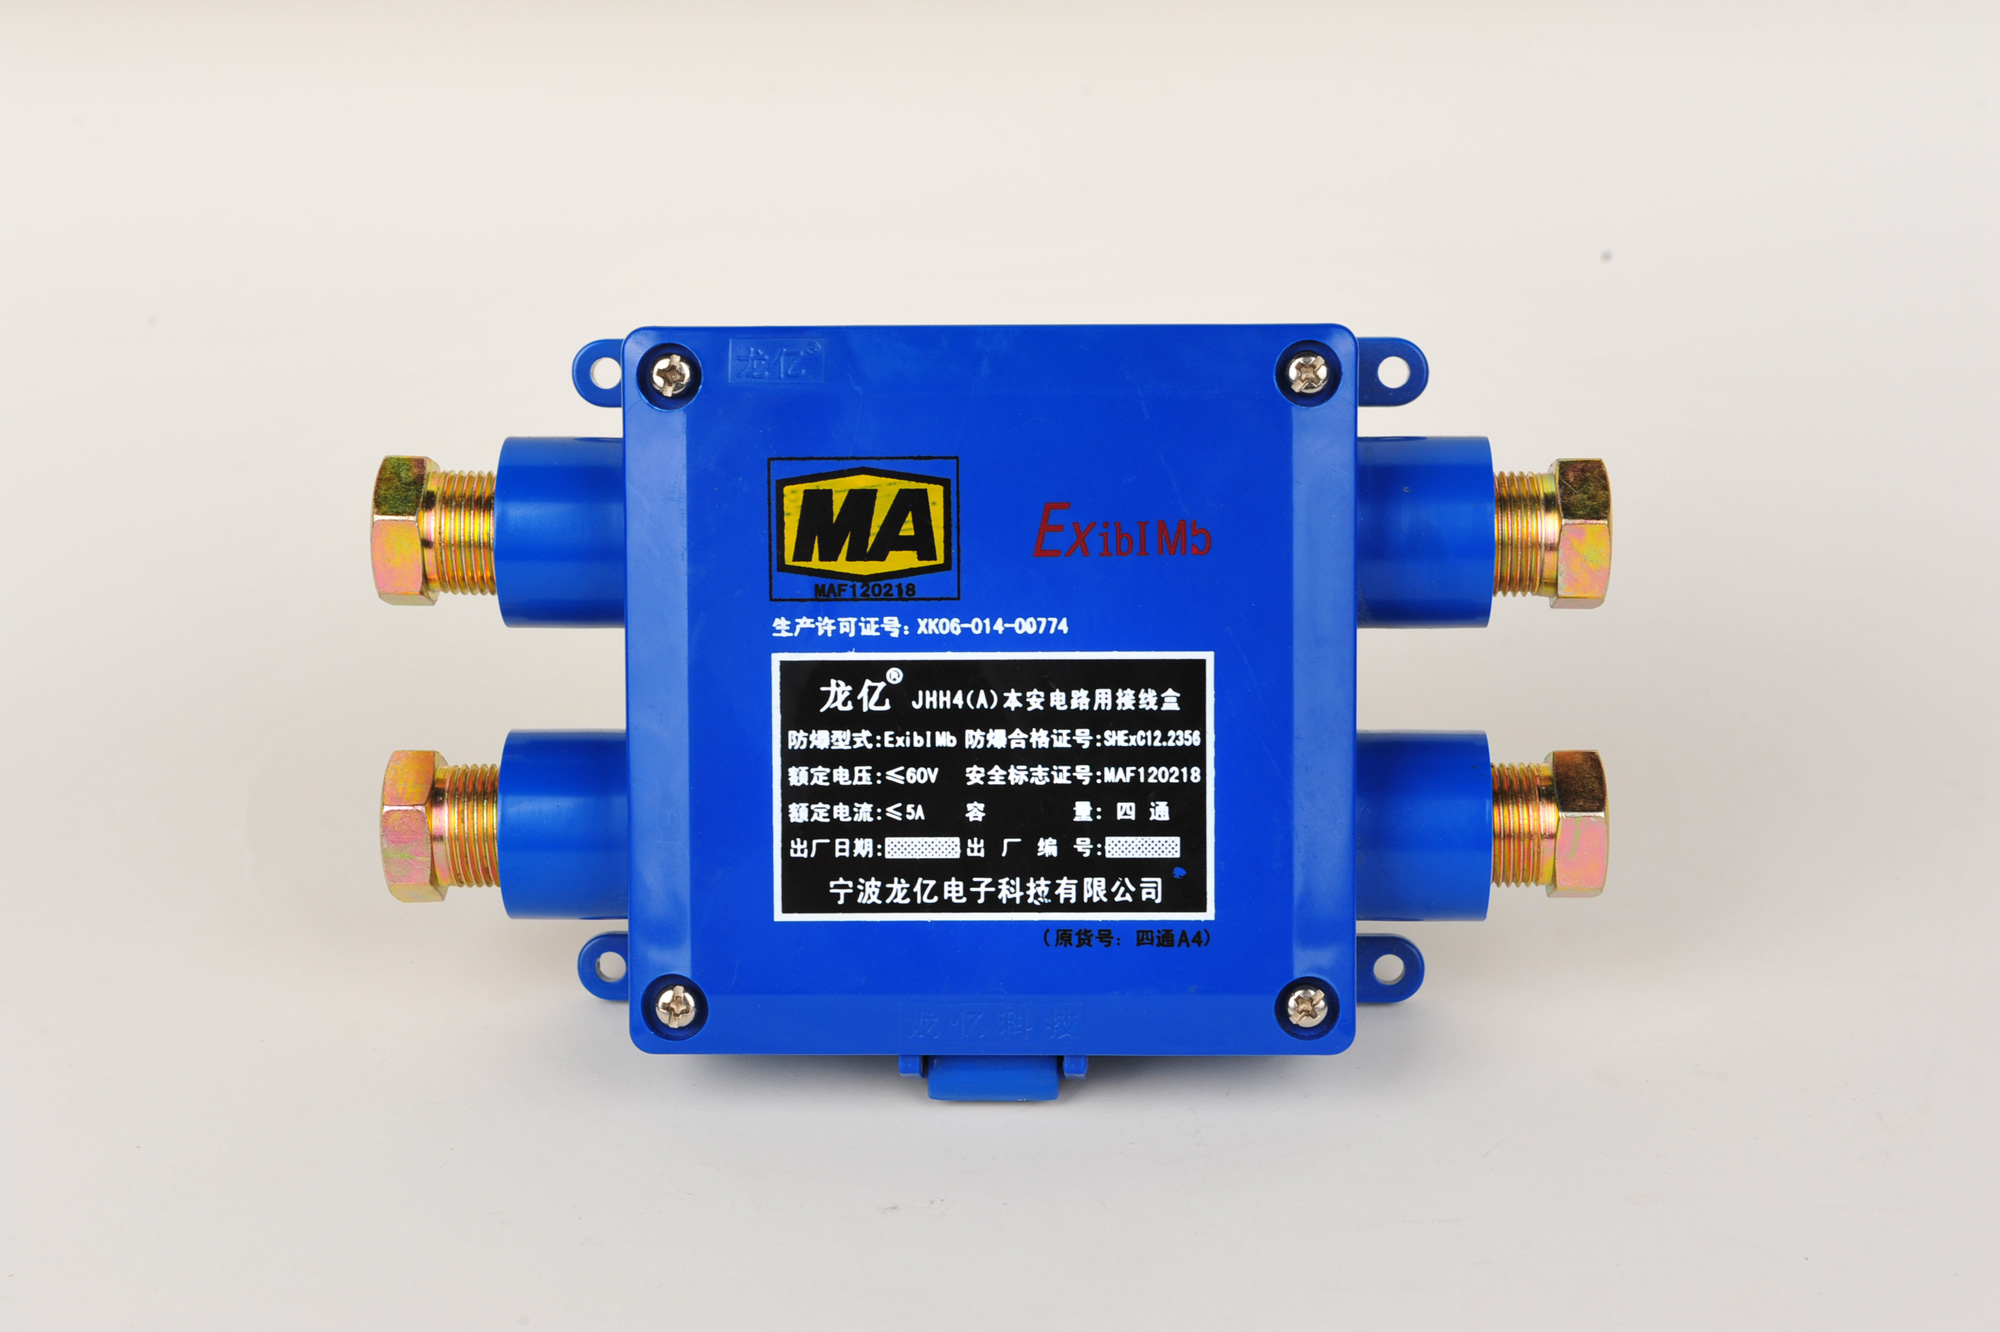 JHH4(A)本安电路用接线盒生产厂家